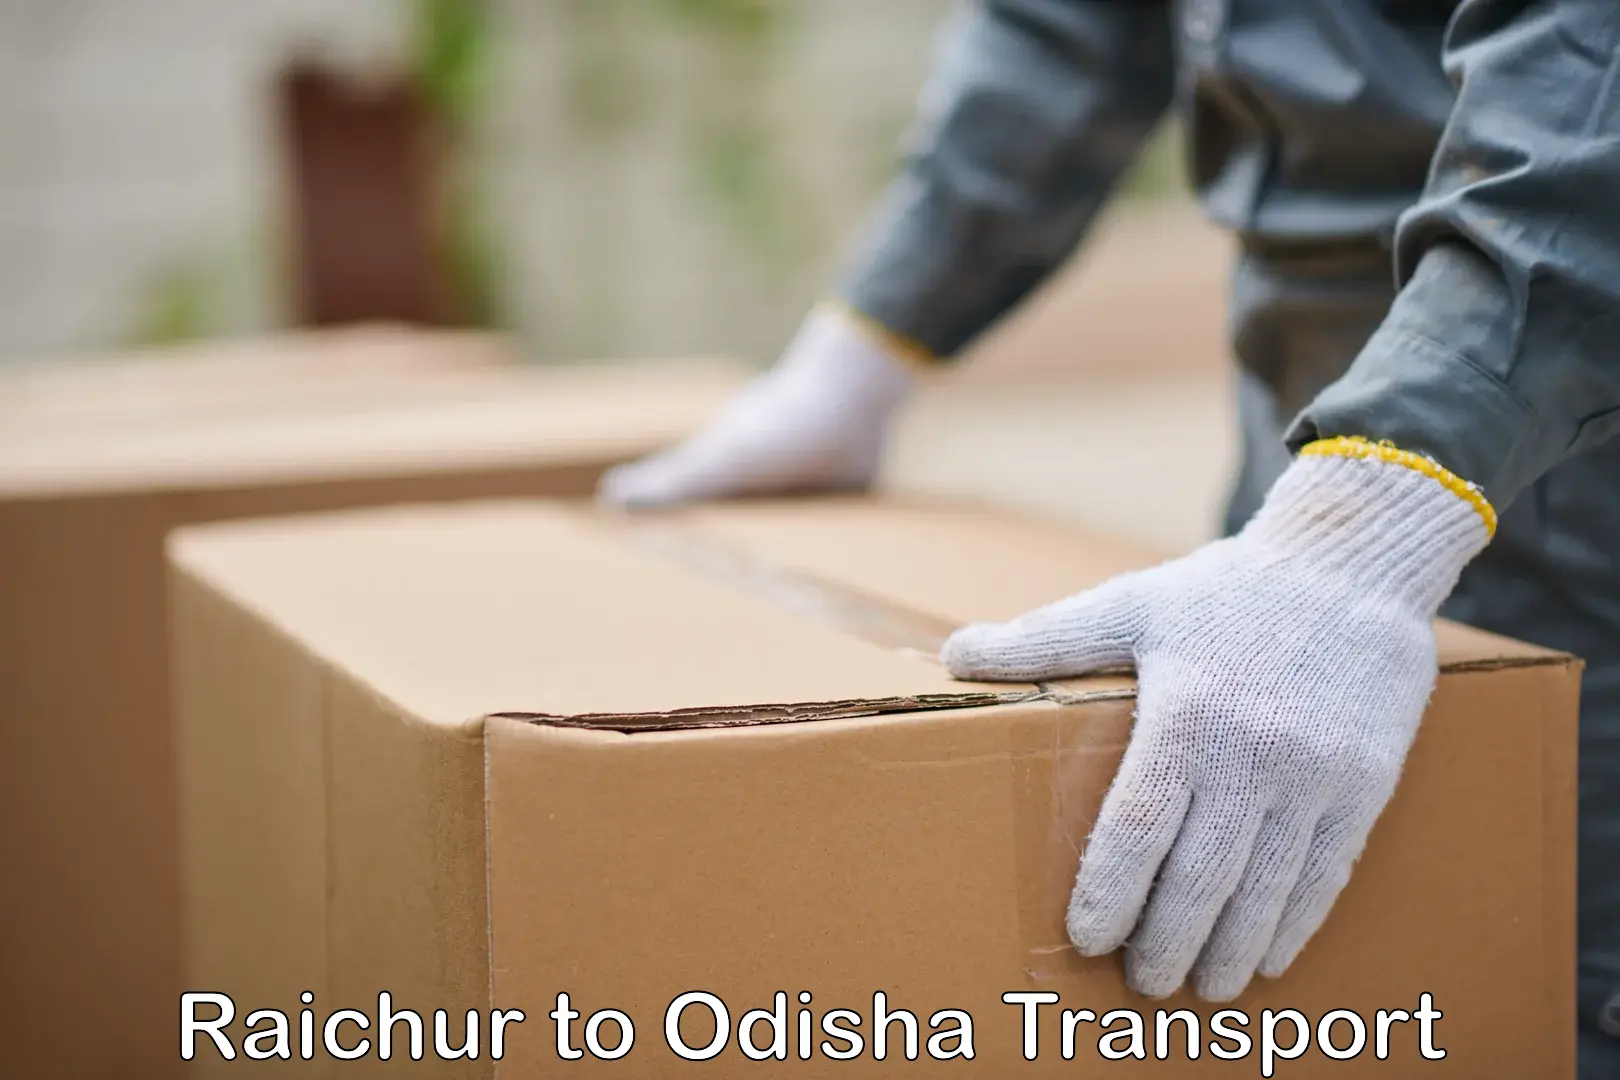 Bike shipping service Raichur to Bargarh